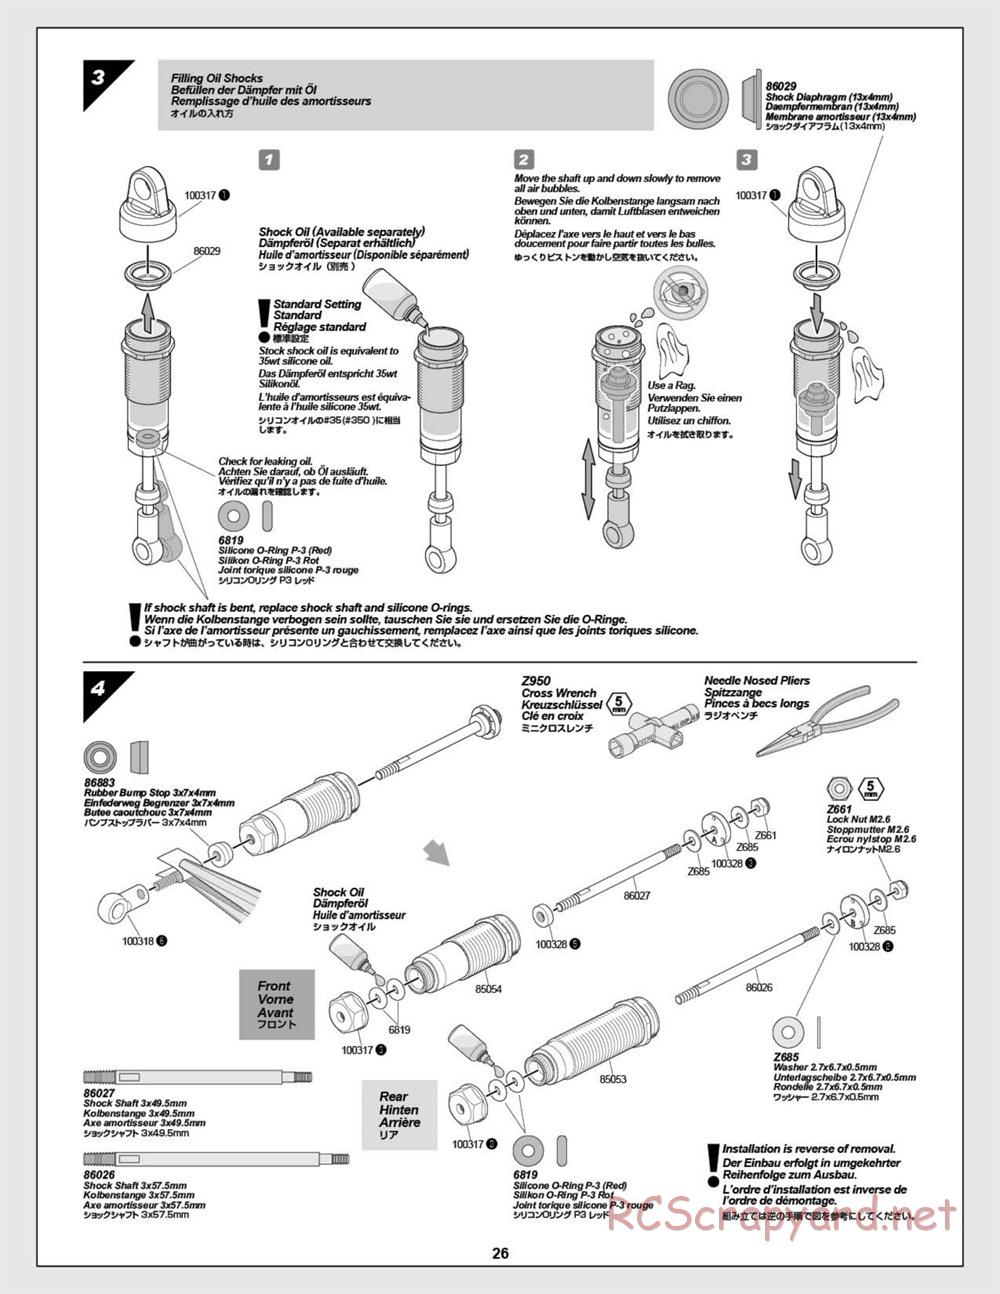 HPI - E-Firestorm-10T - Manual - Page 26